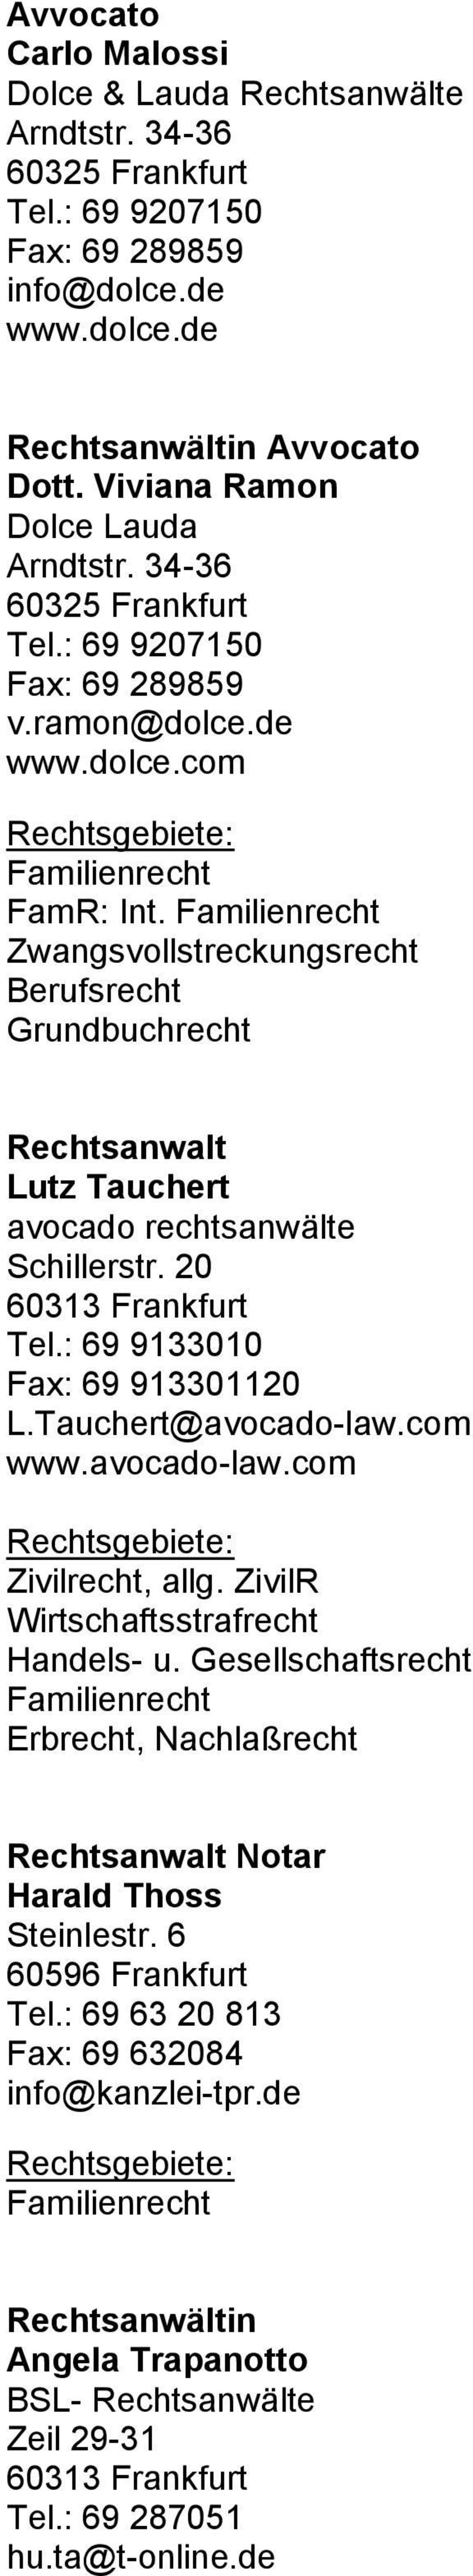 Zwangsvollstreckungsrecht Berufsrecht Grundbuchrecht Lutz Tauchert avocado rechtsanwälte Schillerstr. 20 Tel.: 69 9133010 Fax: 69 913301120 L.